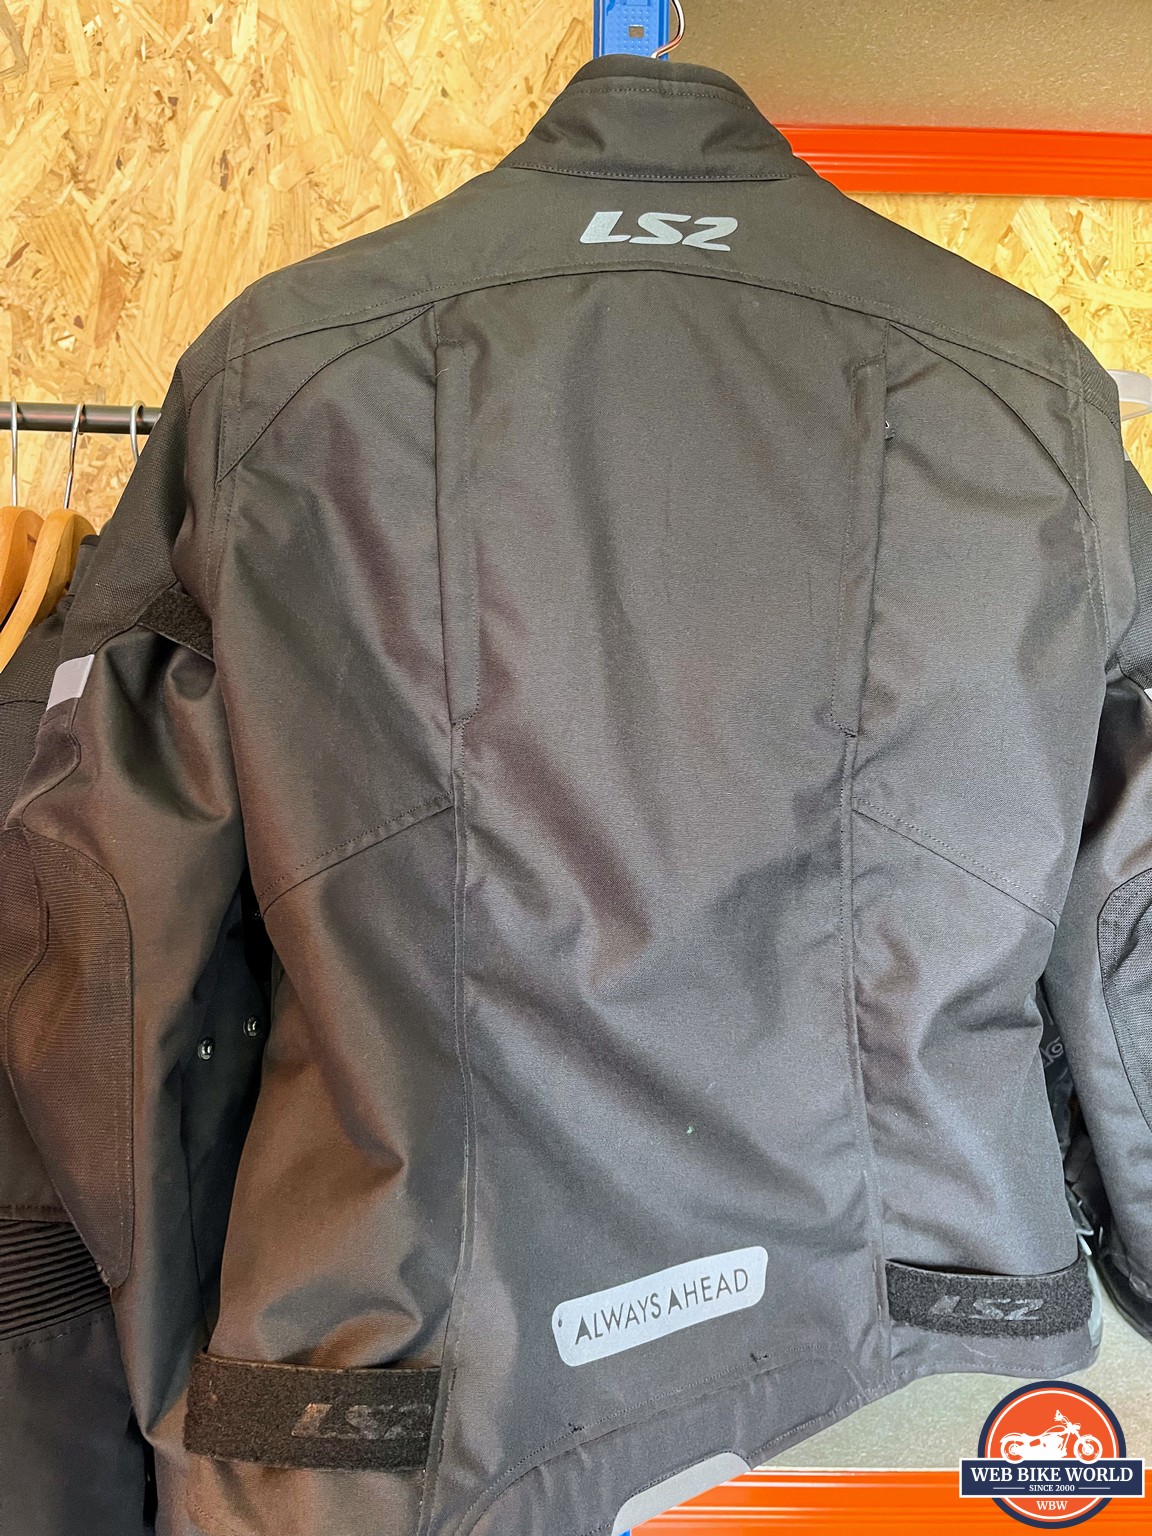 Rear view of the LS2 Serra Evo Jacket